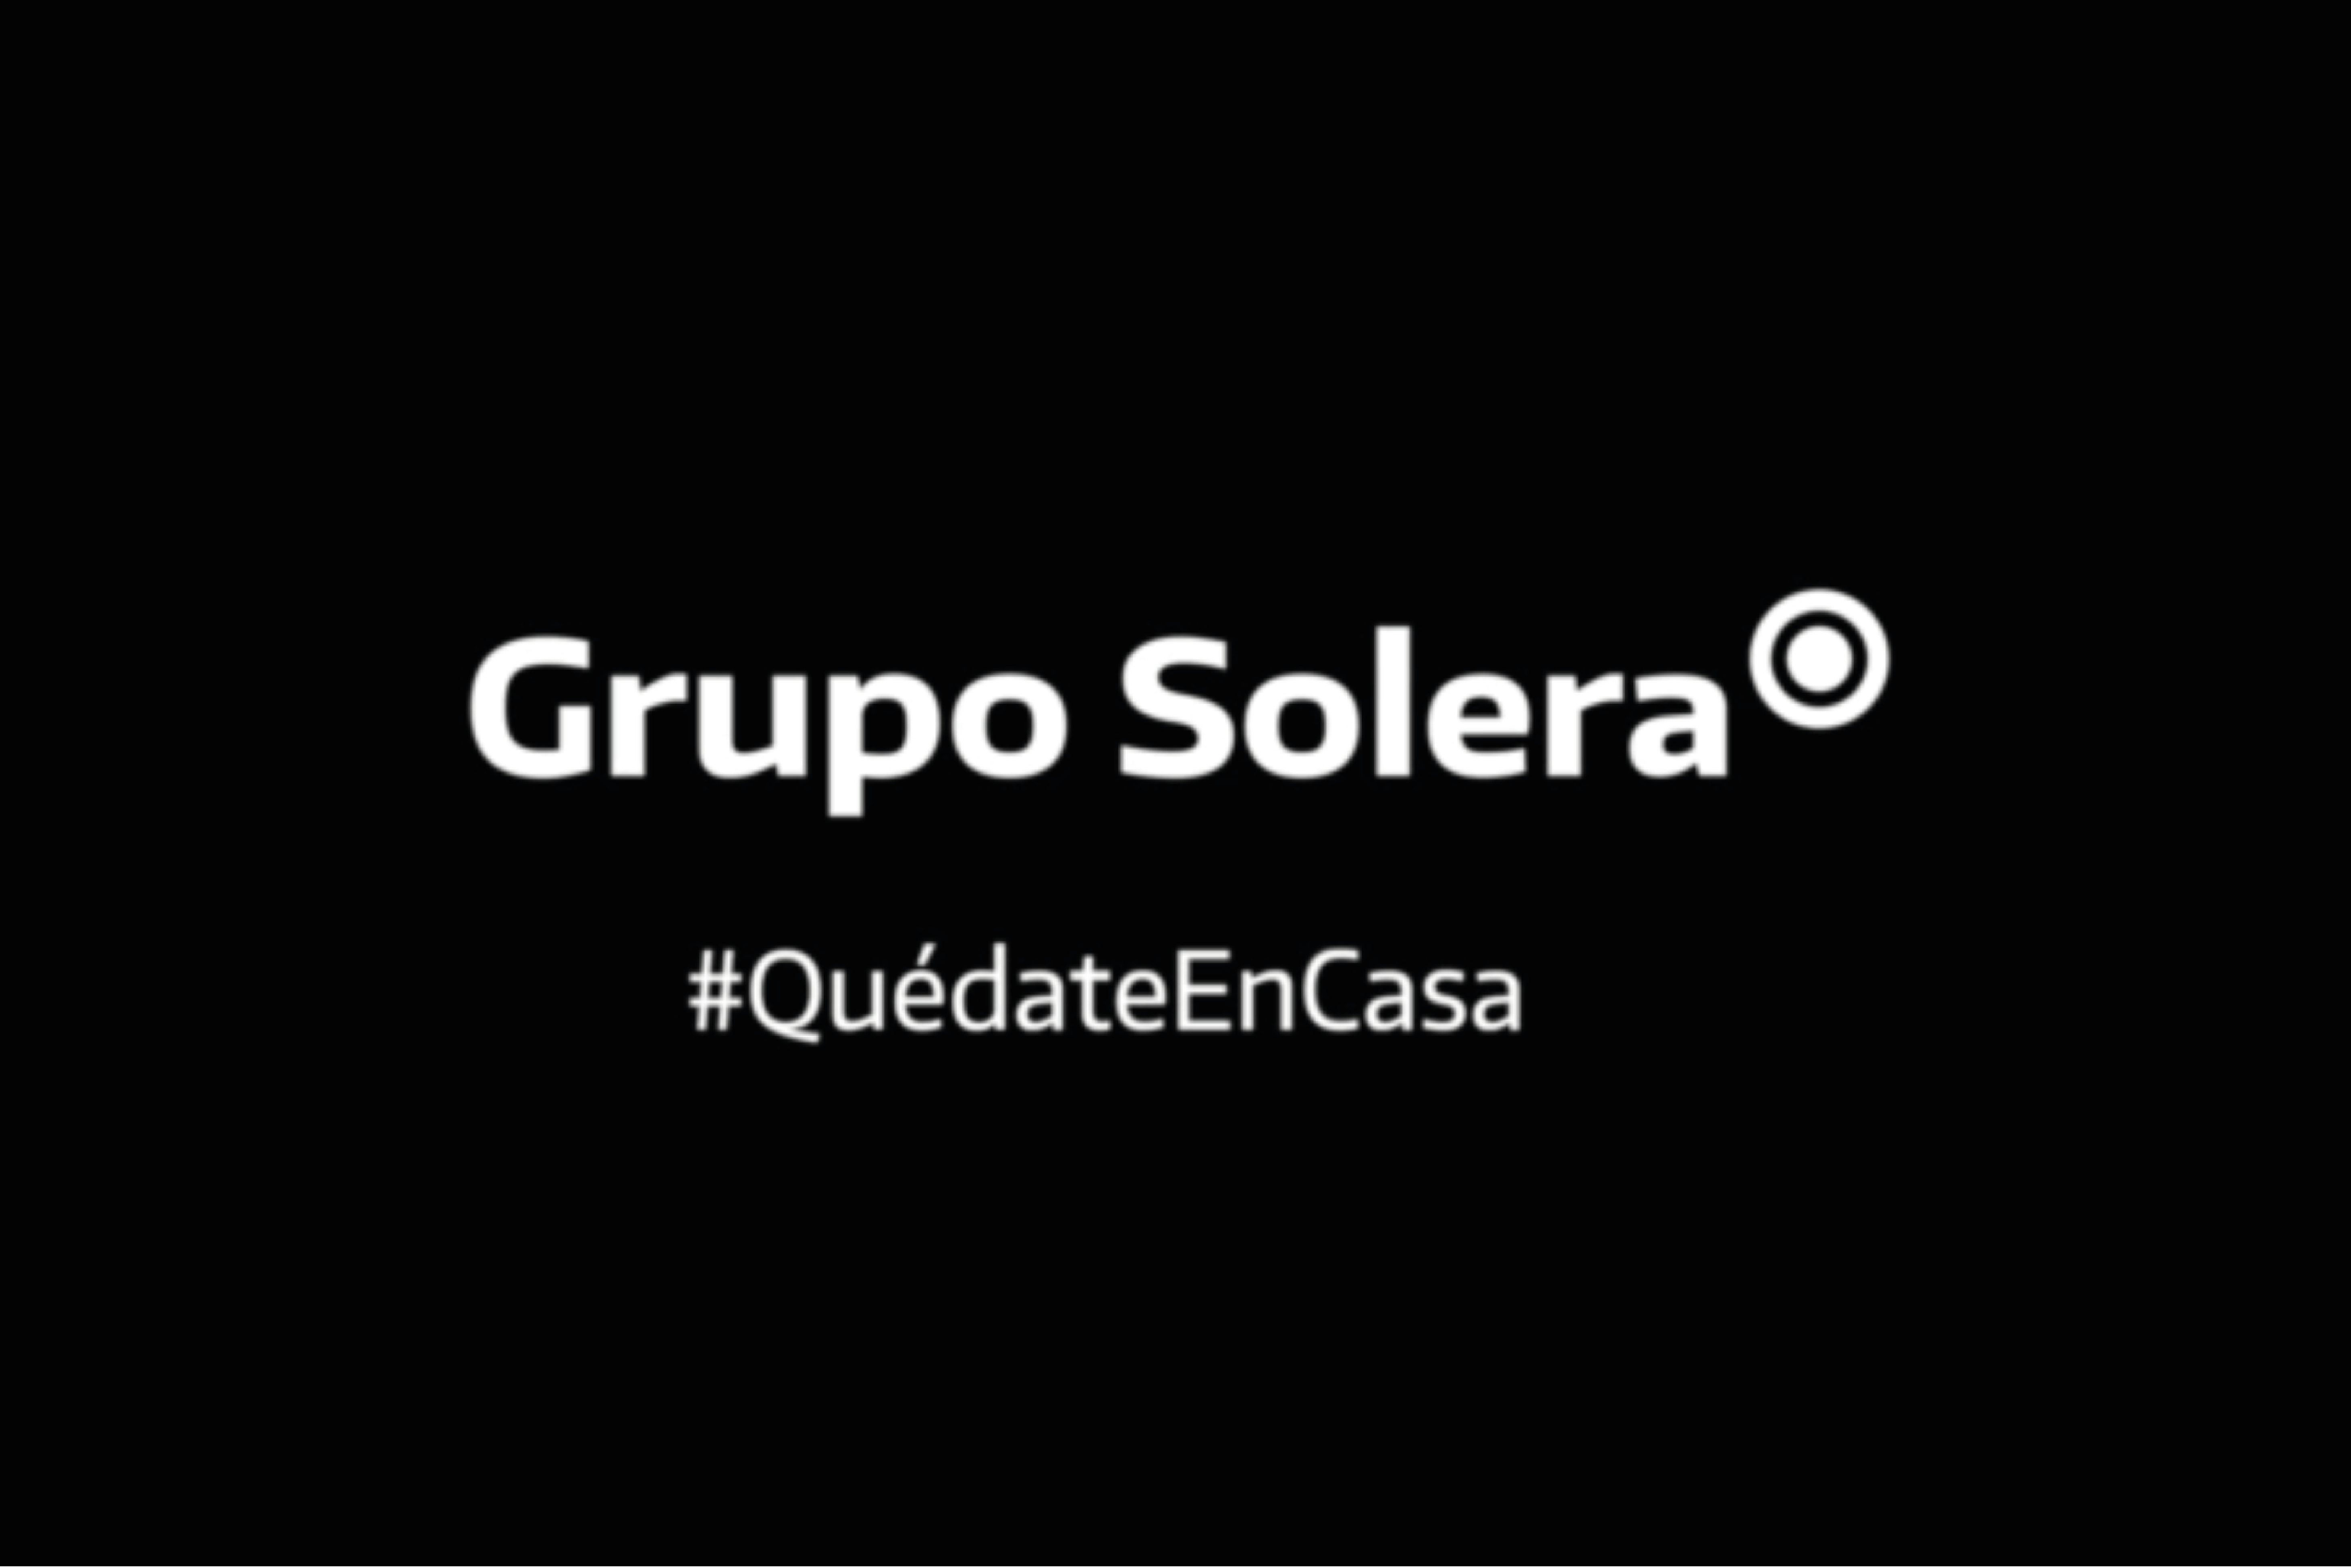 Grupo Solera #QuédateEnCasa